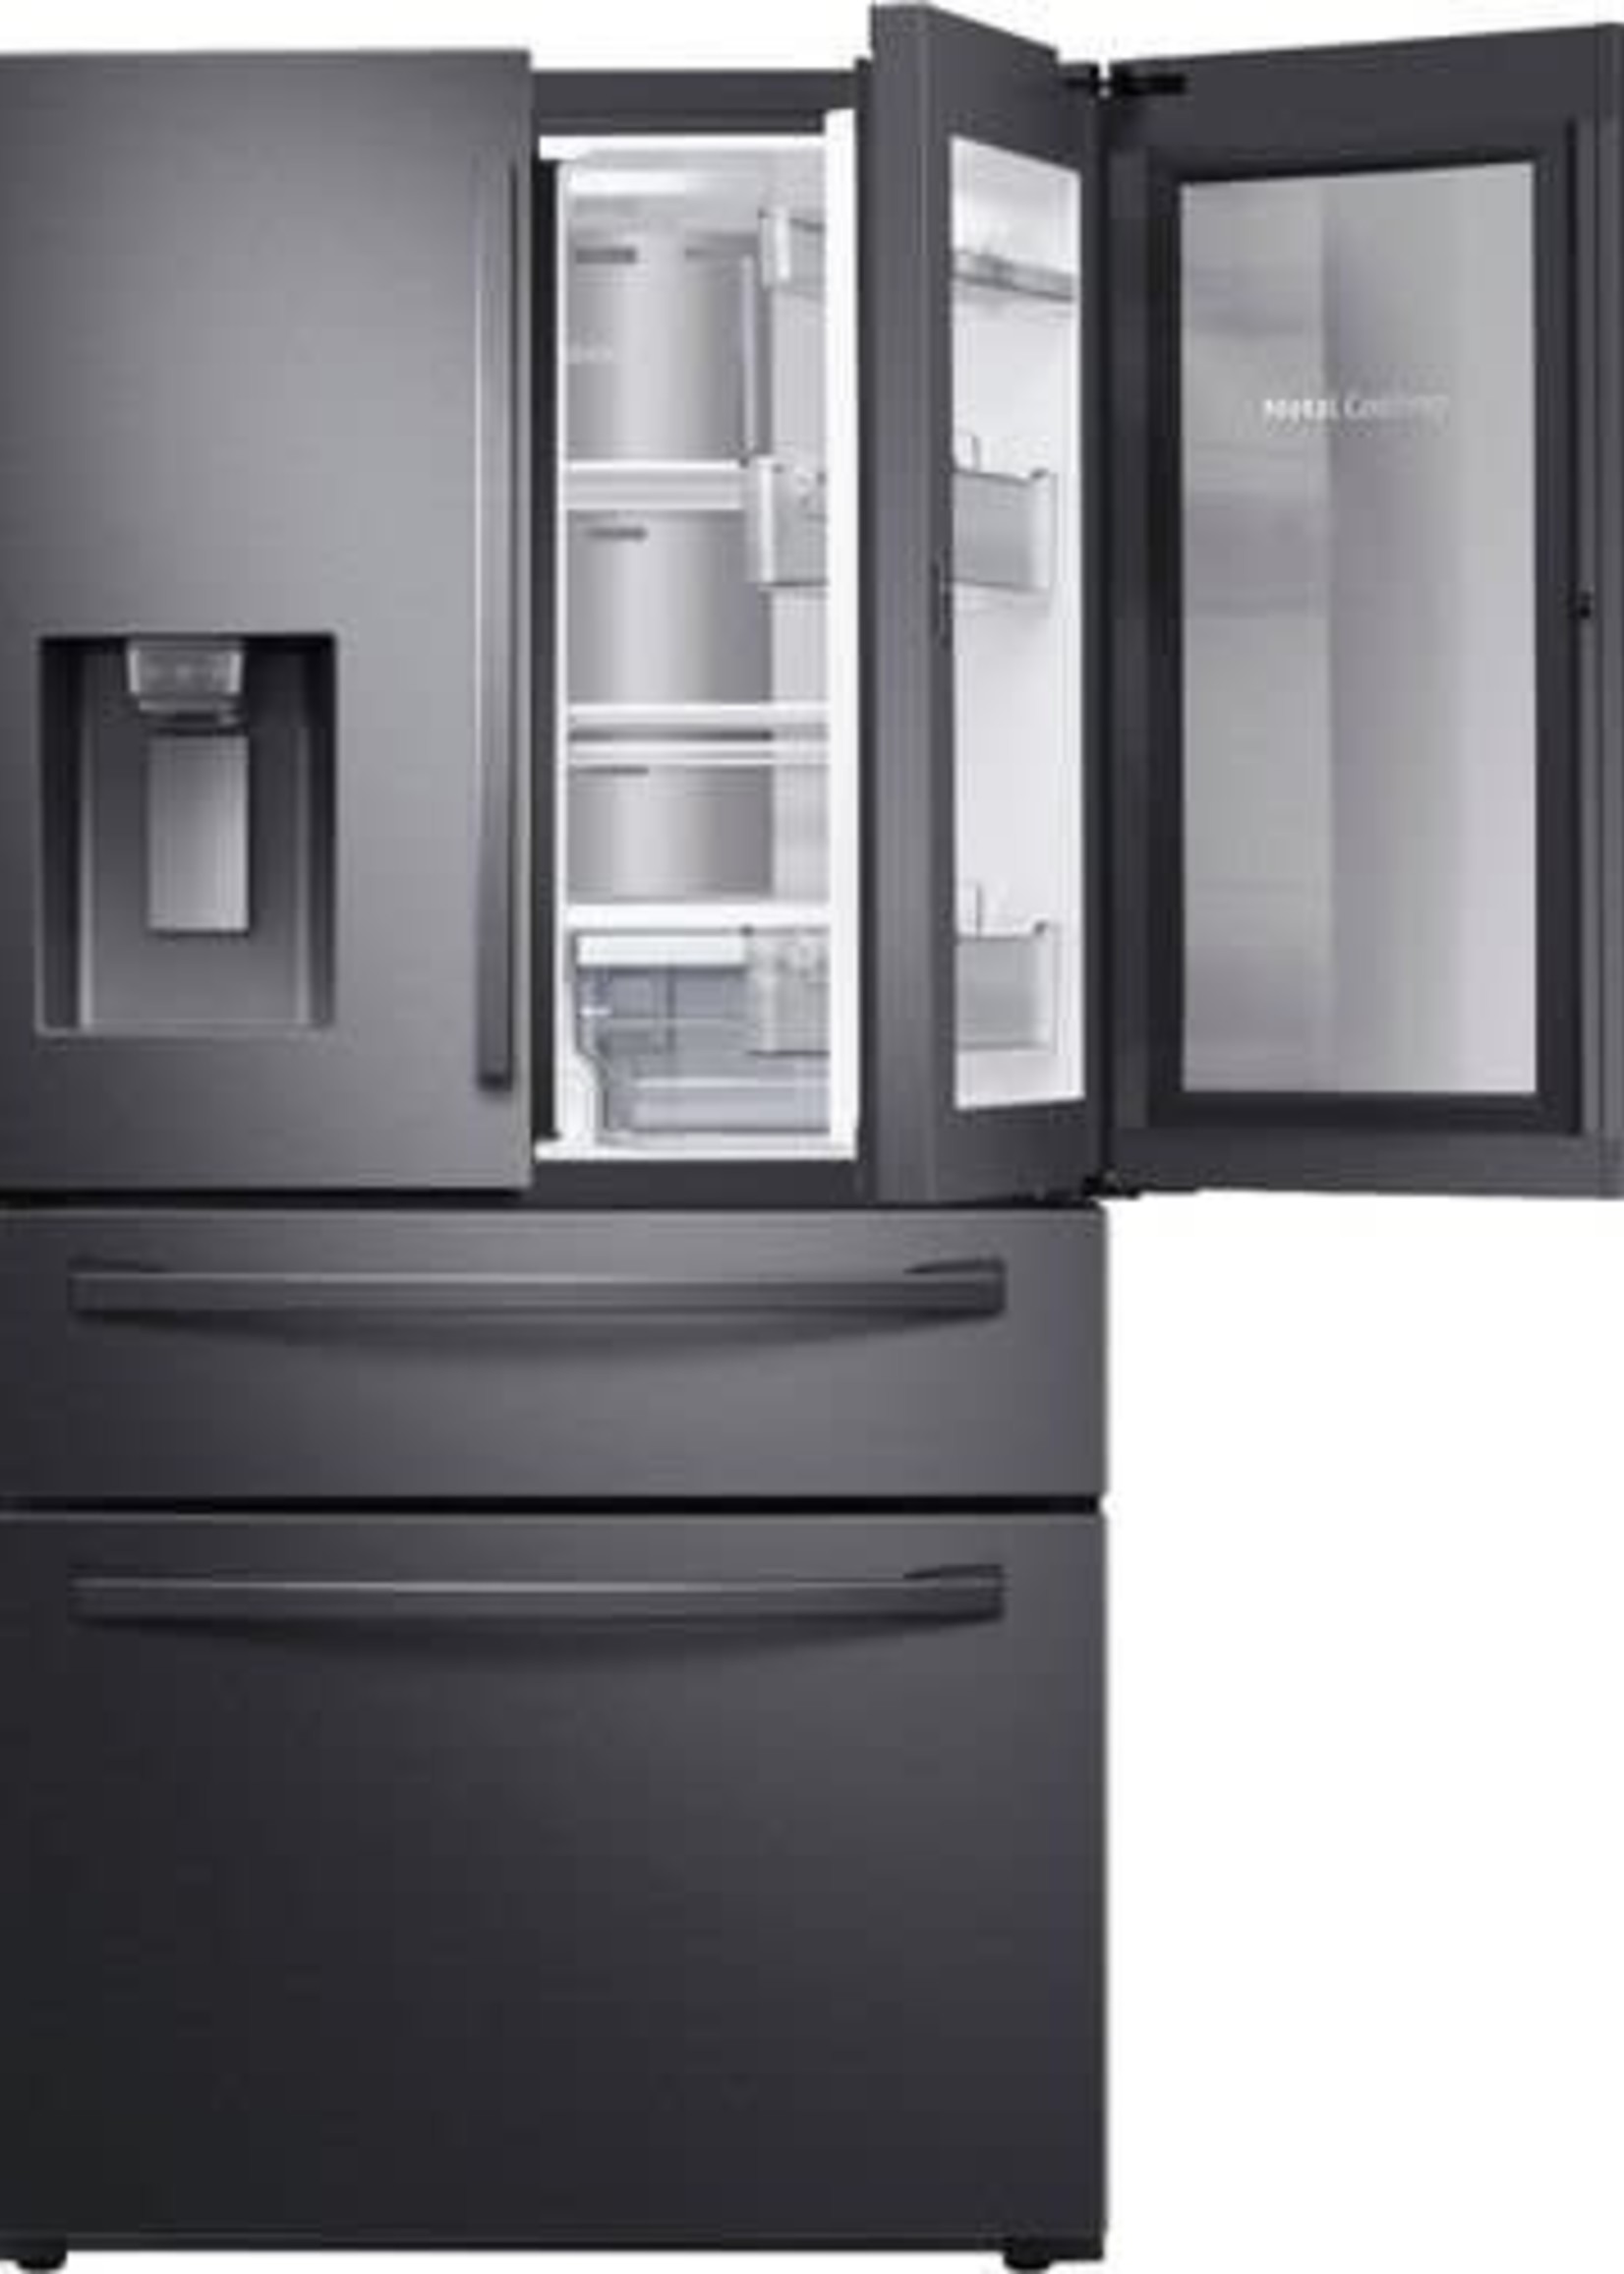 Samsung *Samsung  RF28R7351SG /AA  Food Showcase 28-cu ft 4-Door French Door Refrigerator with Ice Maker and Door within Door (Fingerprint Resistant Black Stainless Steel) ENERGY STAR